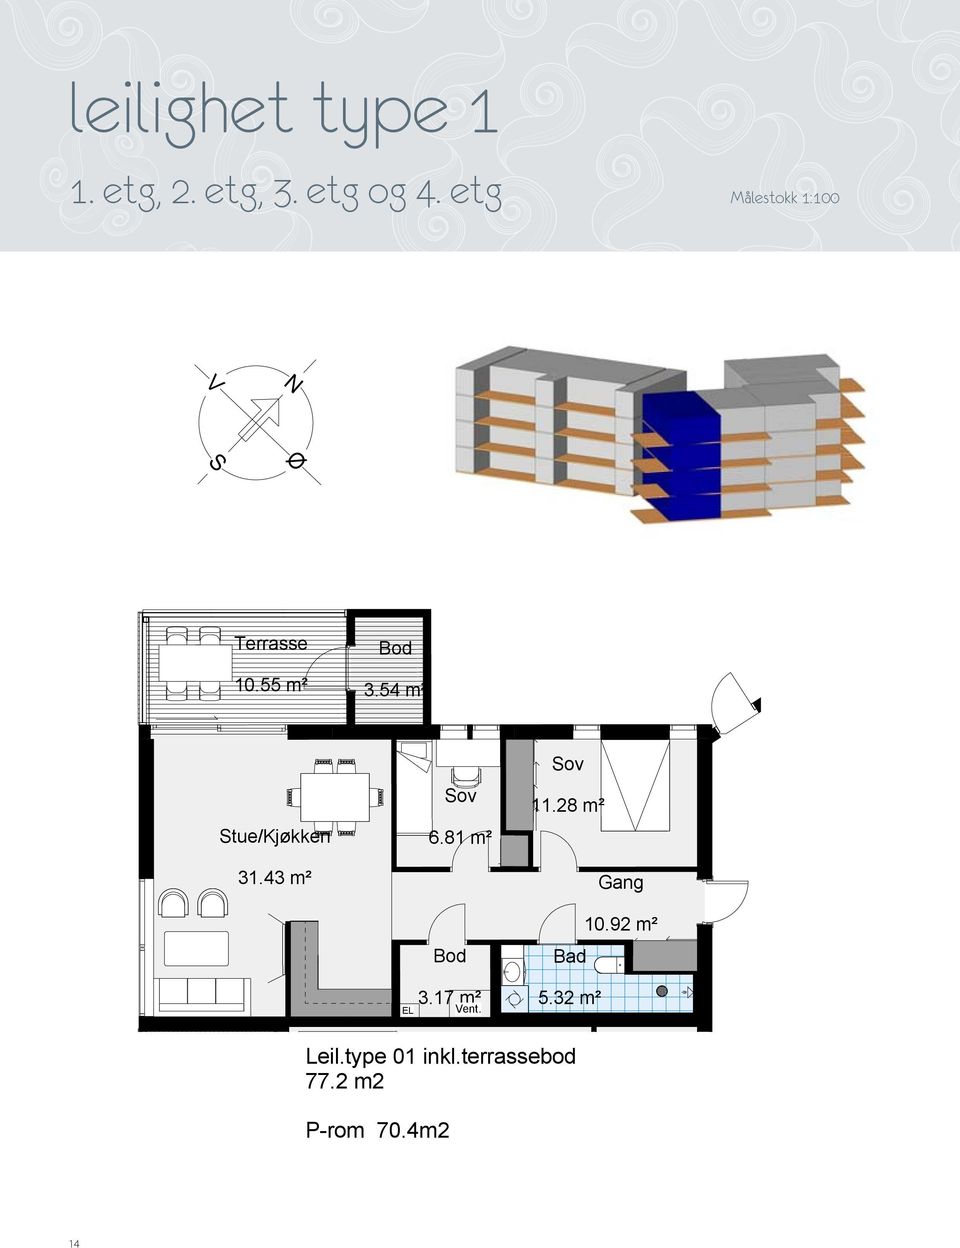 28 m² 6.81 m² tue/kjøkken 31.43 m² 31.43 m² 6.81 m² 3.17 m² 11.